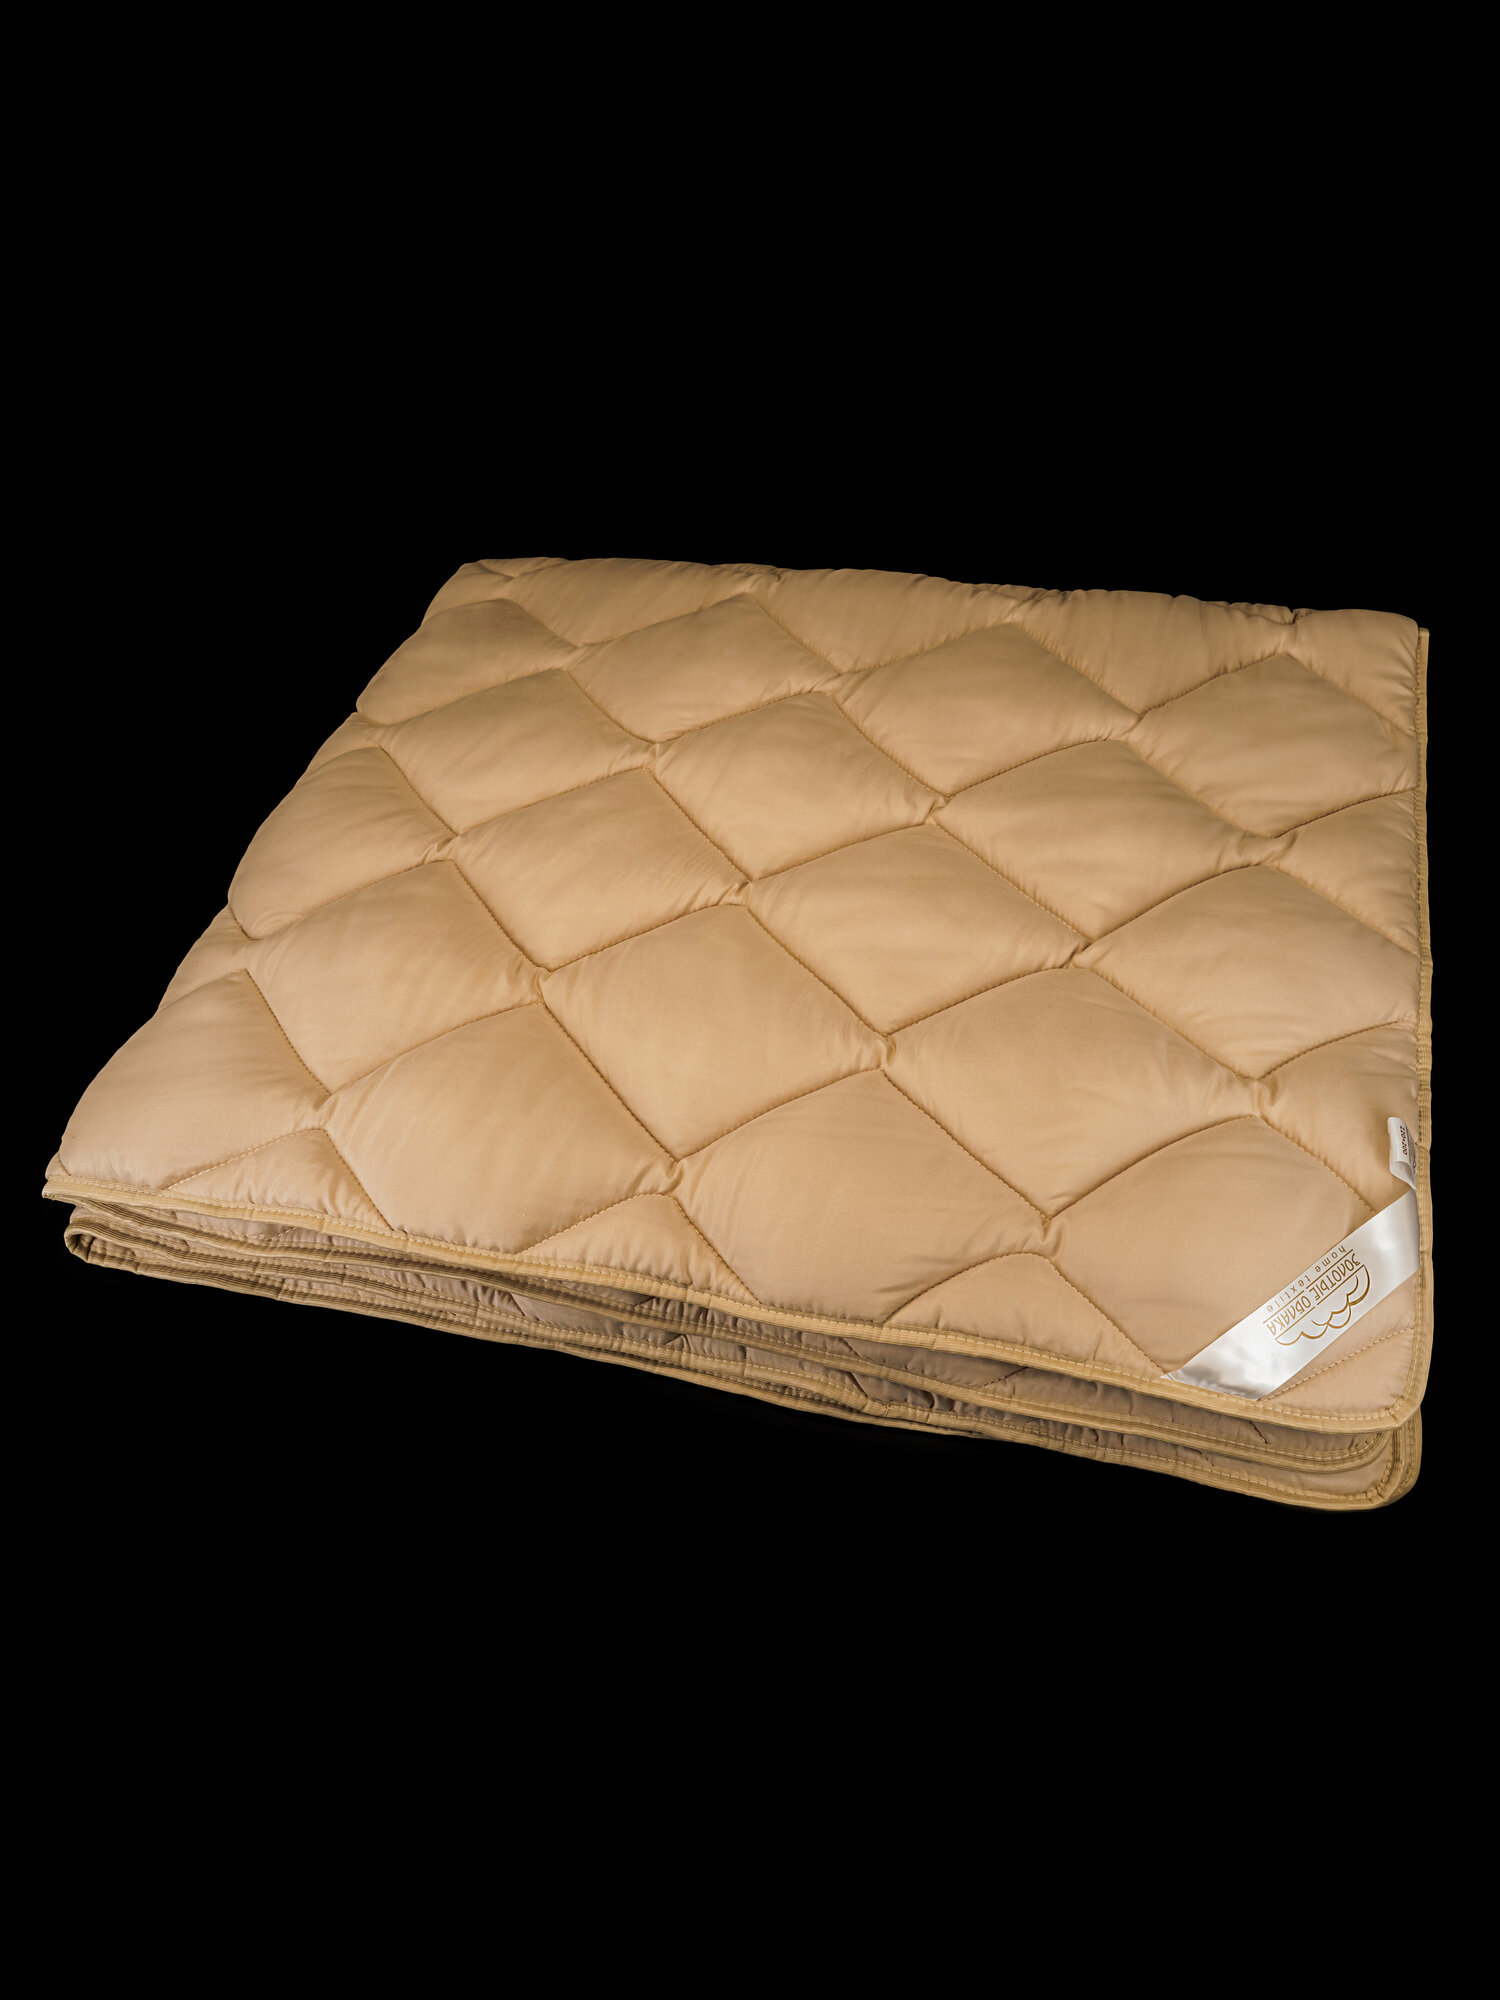 Одеяло Непроспи "Верблюд" Евро 200х220 см / Всесезонное, теплое, стеганое одеяло из верблюжьей шерсти